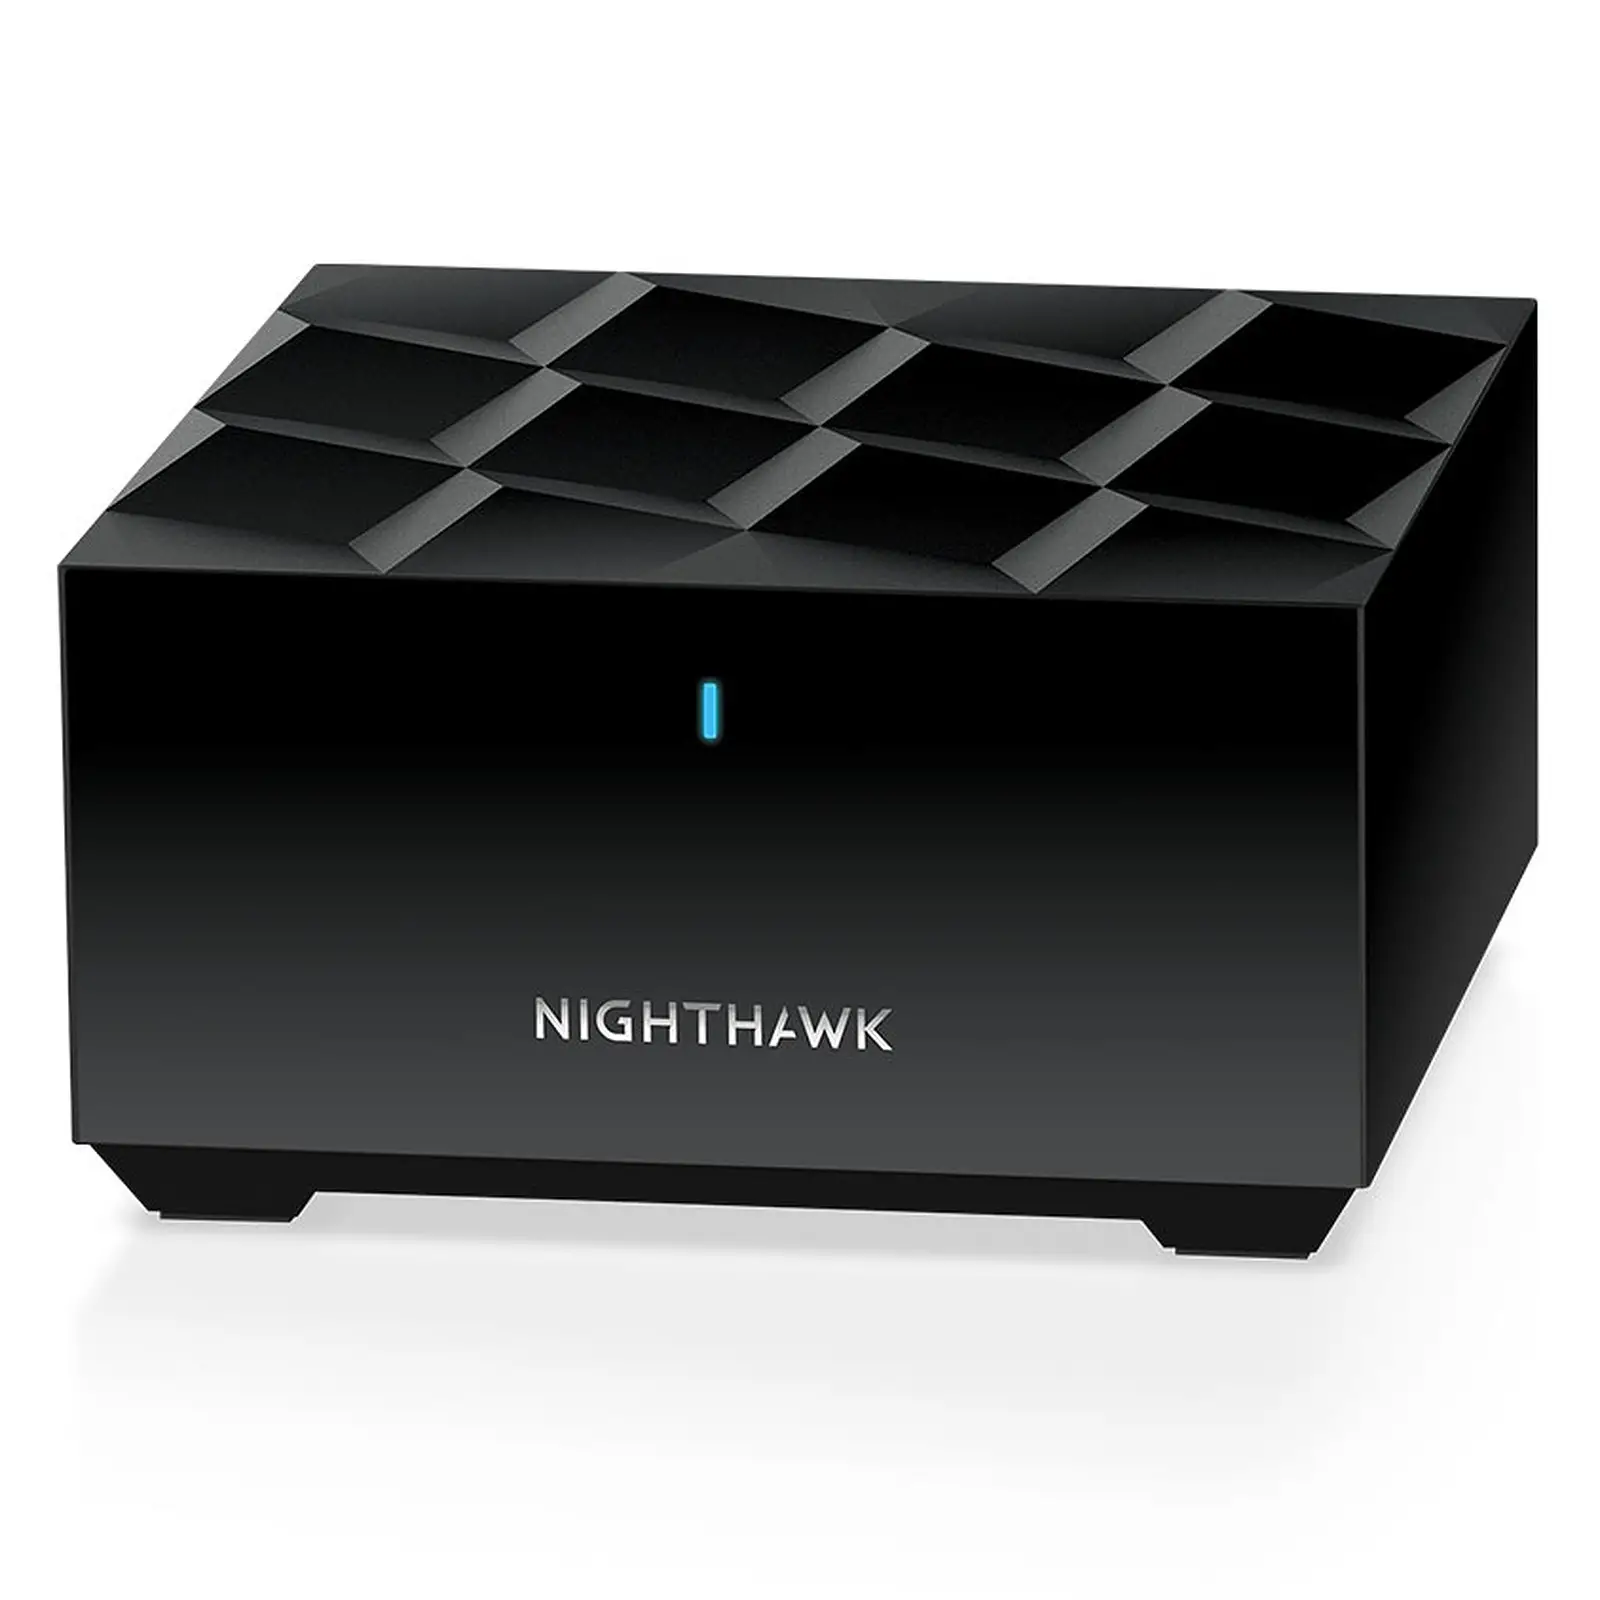 Le Netgear nighthawk mesh wifi 6 adopte une couleur noir, peu habituelle sur les routeurs mesh